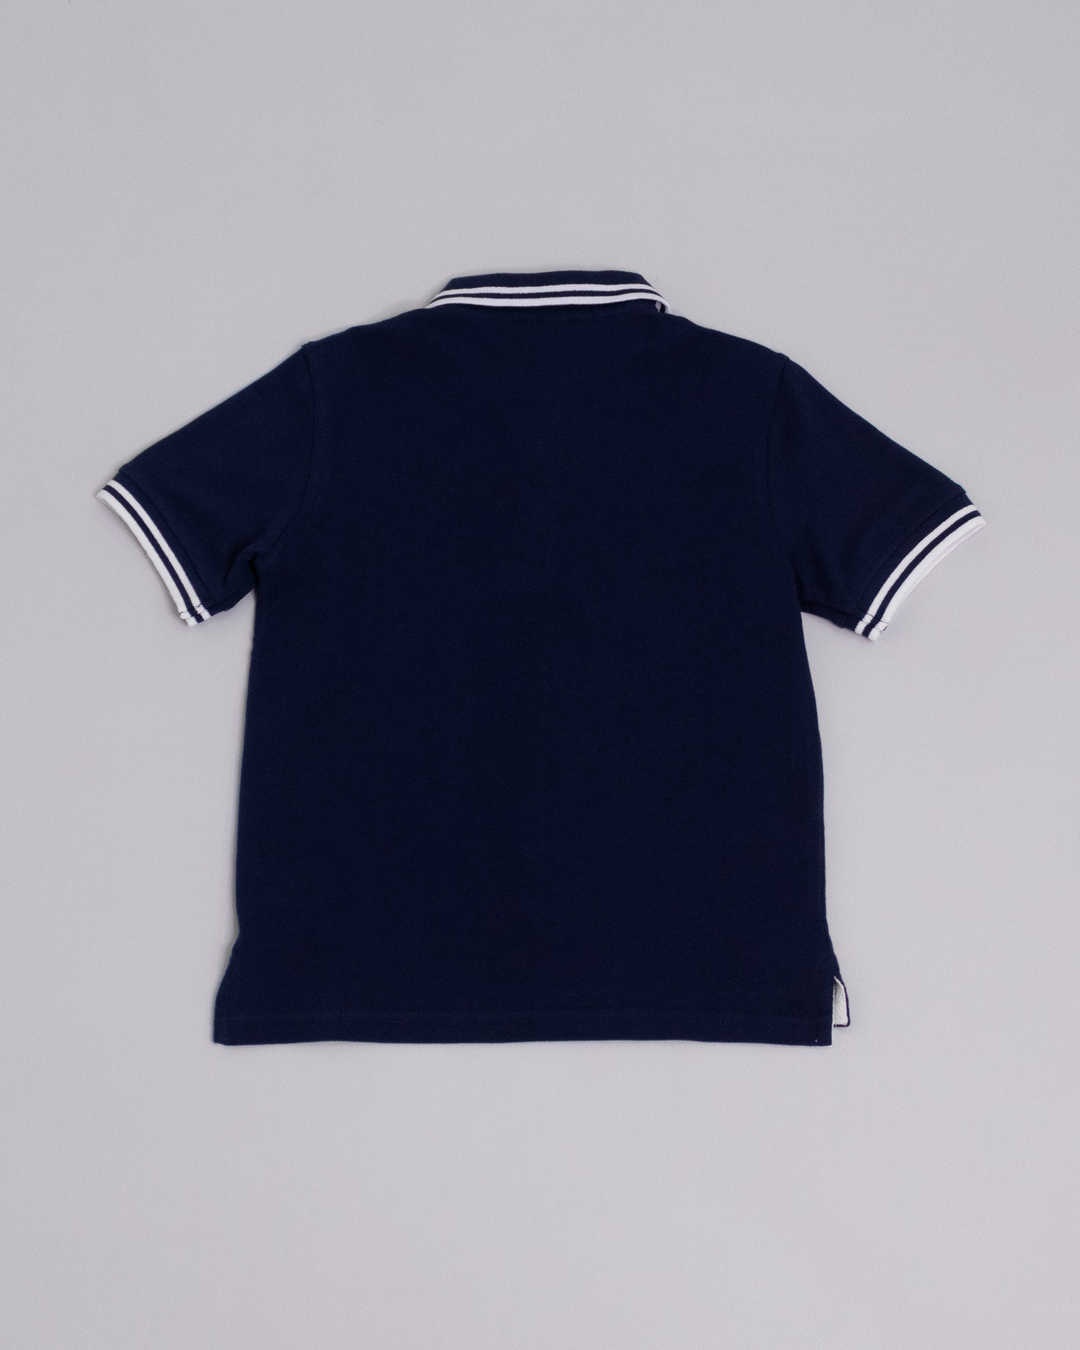 Chemise manga corta azul marino con rayas blancas en mangas y cuellos y bordado de pelota de fútbol